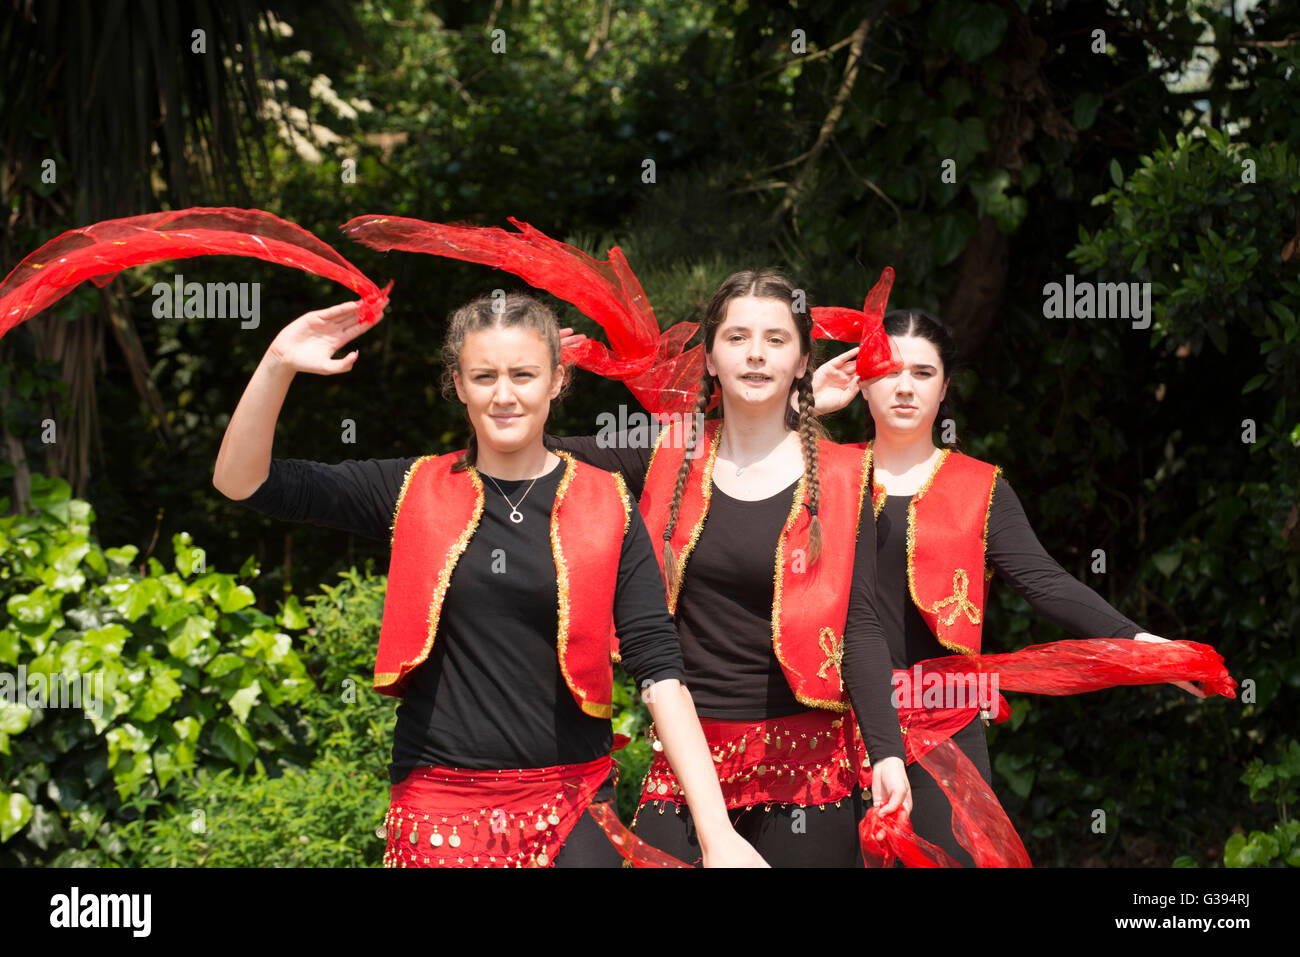 Londra Golders Green Childs Hill Park comunità albanese childrens' Day Festival giovani adolescenti costume nazionale folk dance Foto Stock